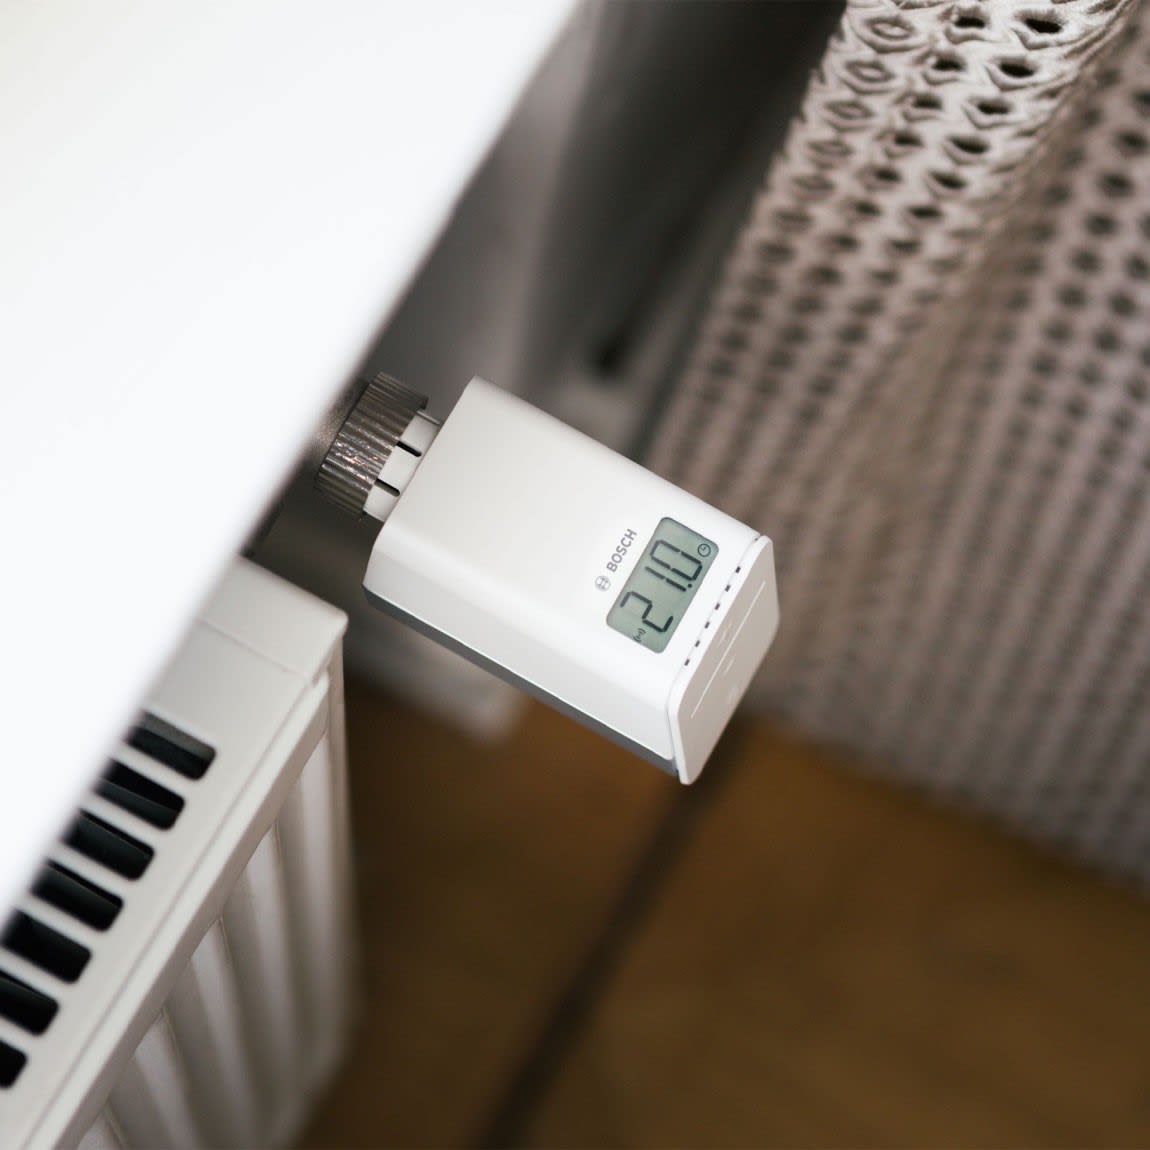 Blanco Bosch Smart Home Kit de Climatización Interior.2